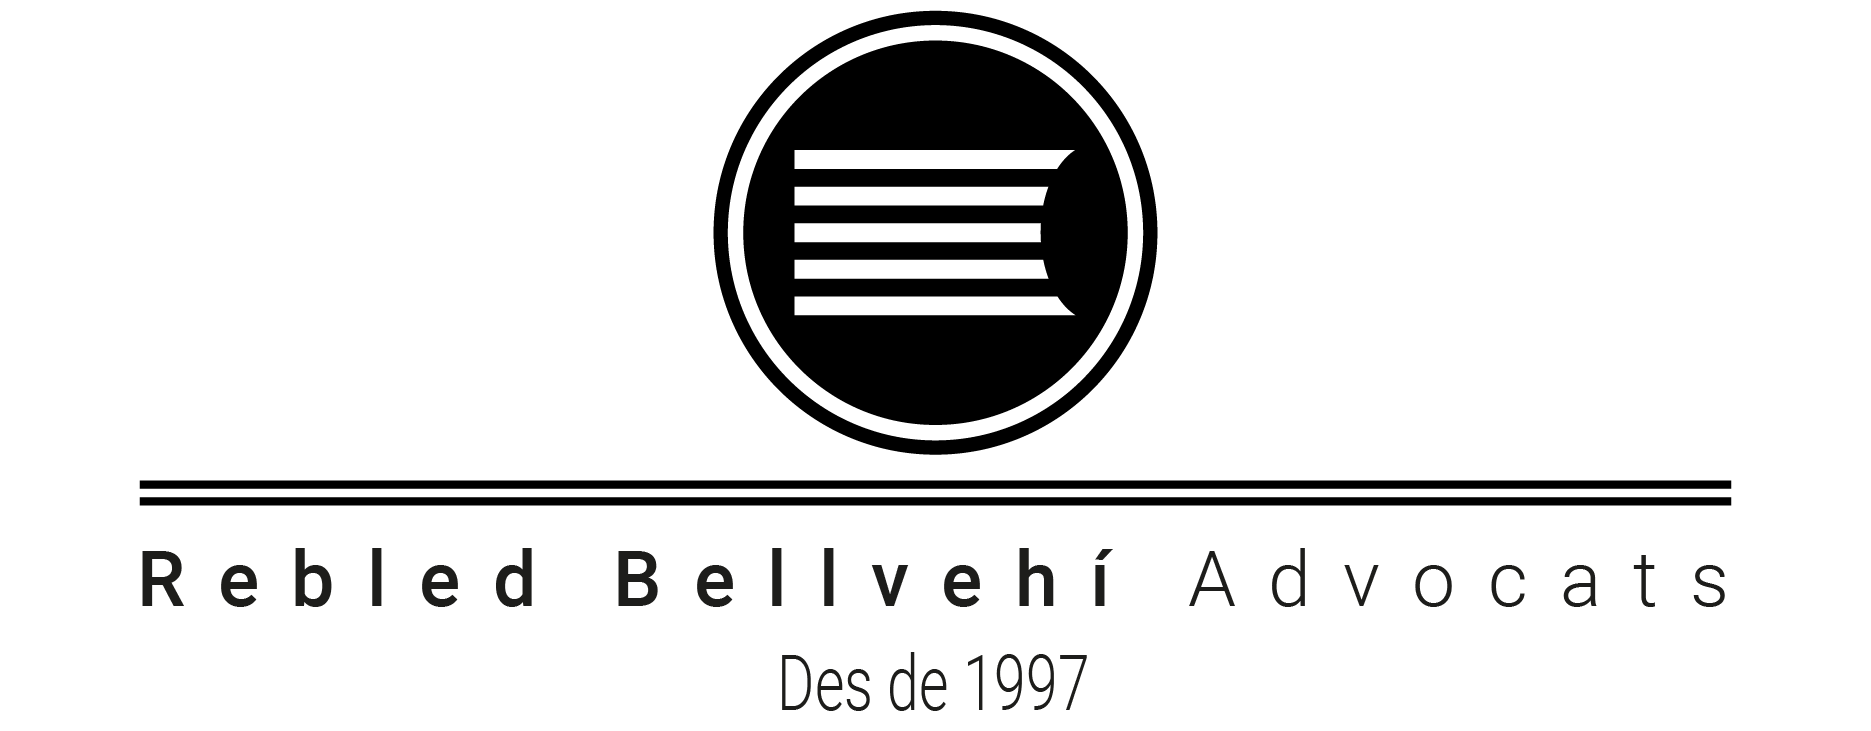 La Factoria - Agència de comunicació Girona | Logotip Rebled Bellvehí Advocats